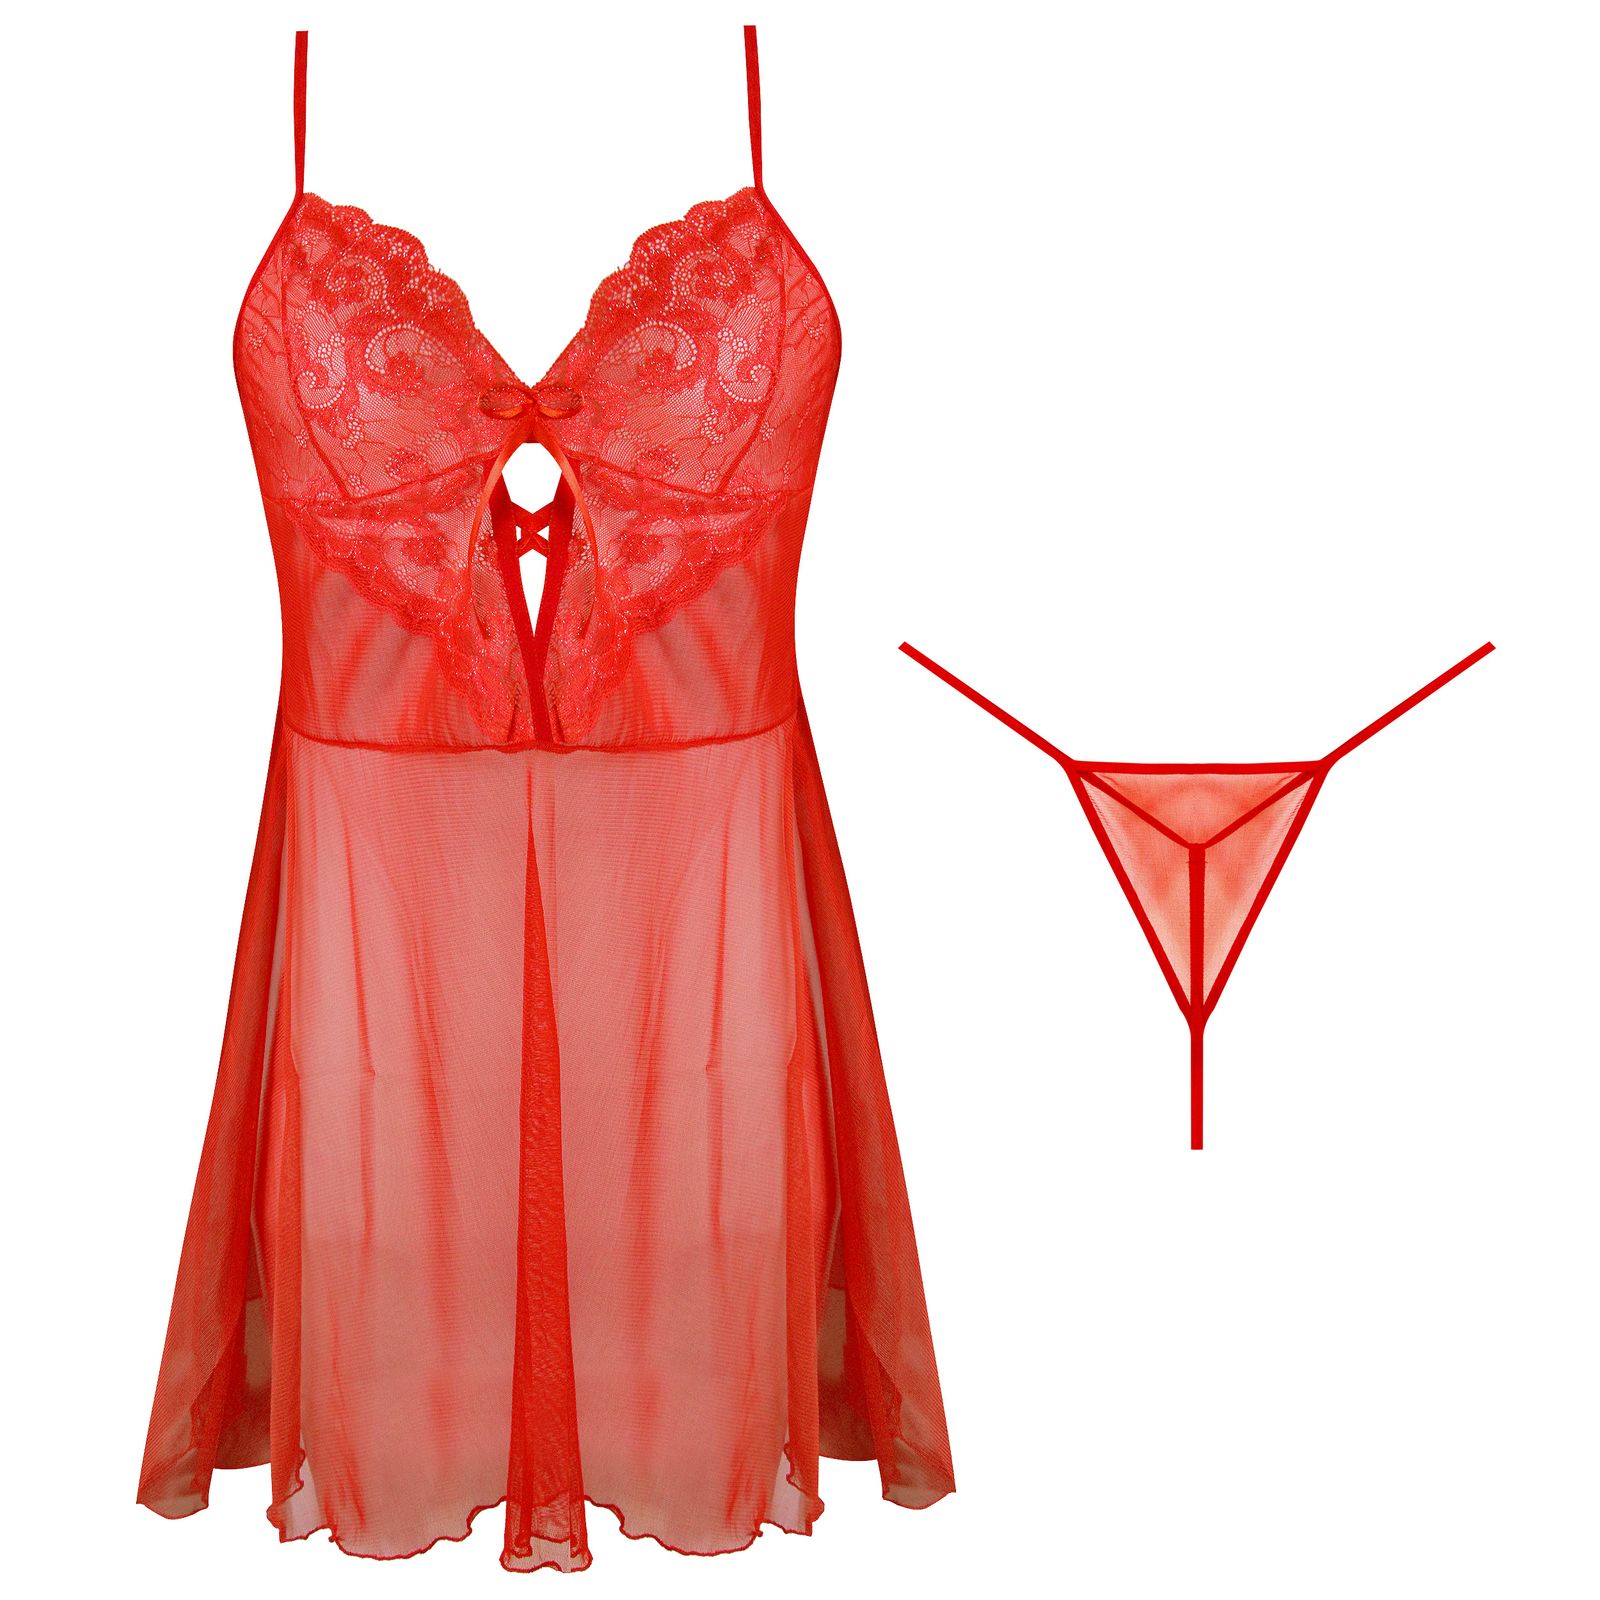 لباس خواب زنانه ماییلدا مدل 3752-512 رنگ قرمز -  - 1